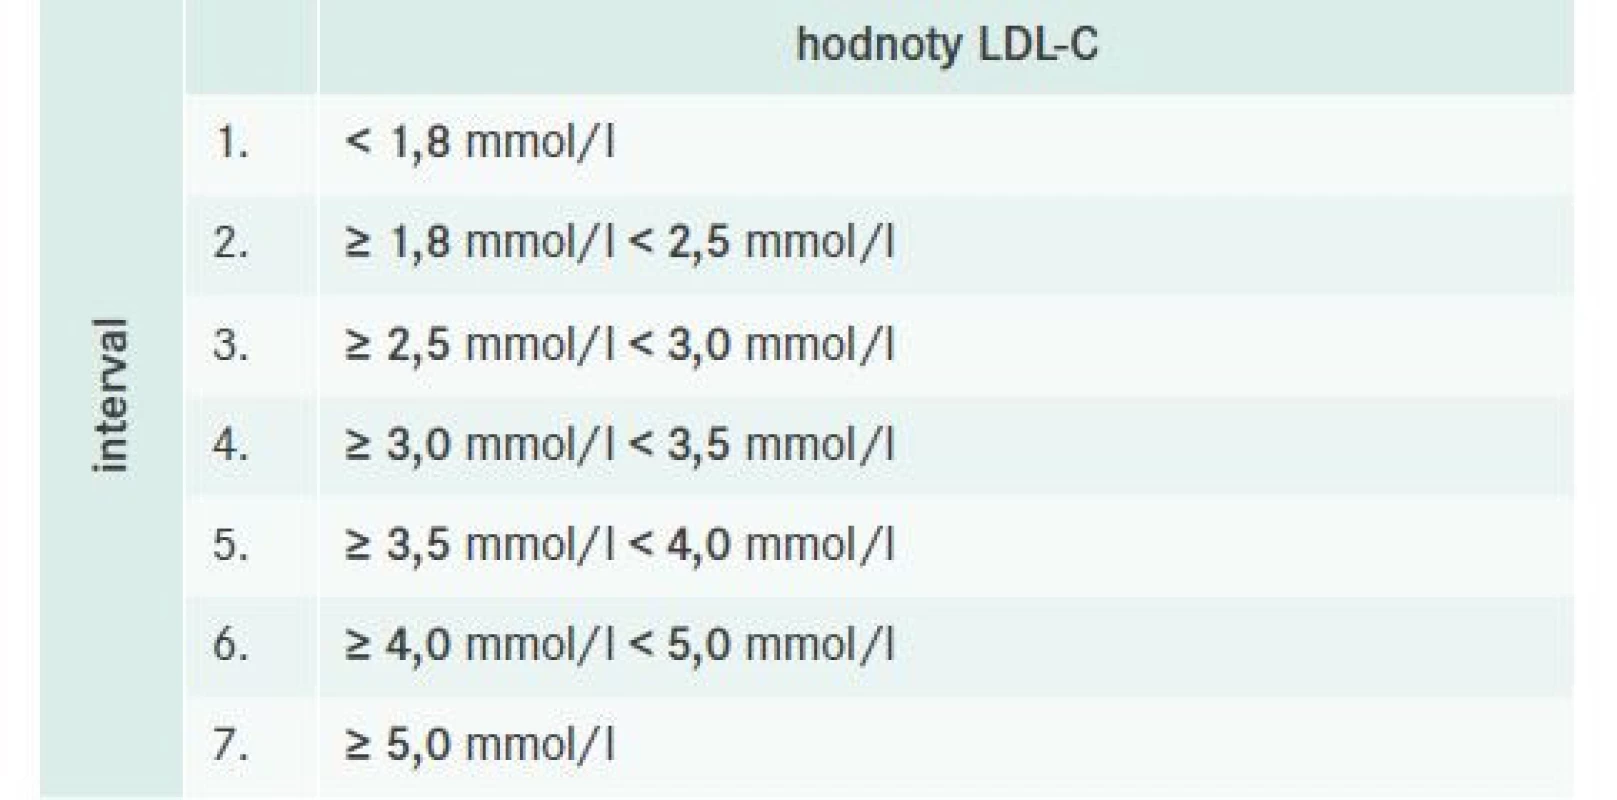 Rozdelenie pacientov podľa hodnôt LDL-C na
hodnotové intervaly